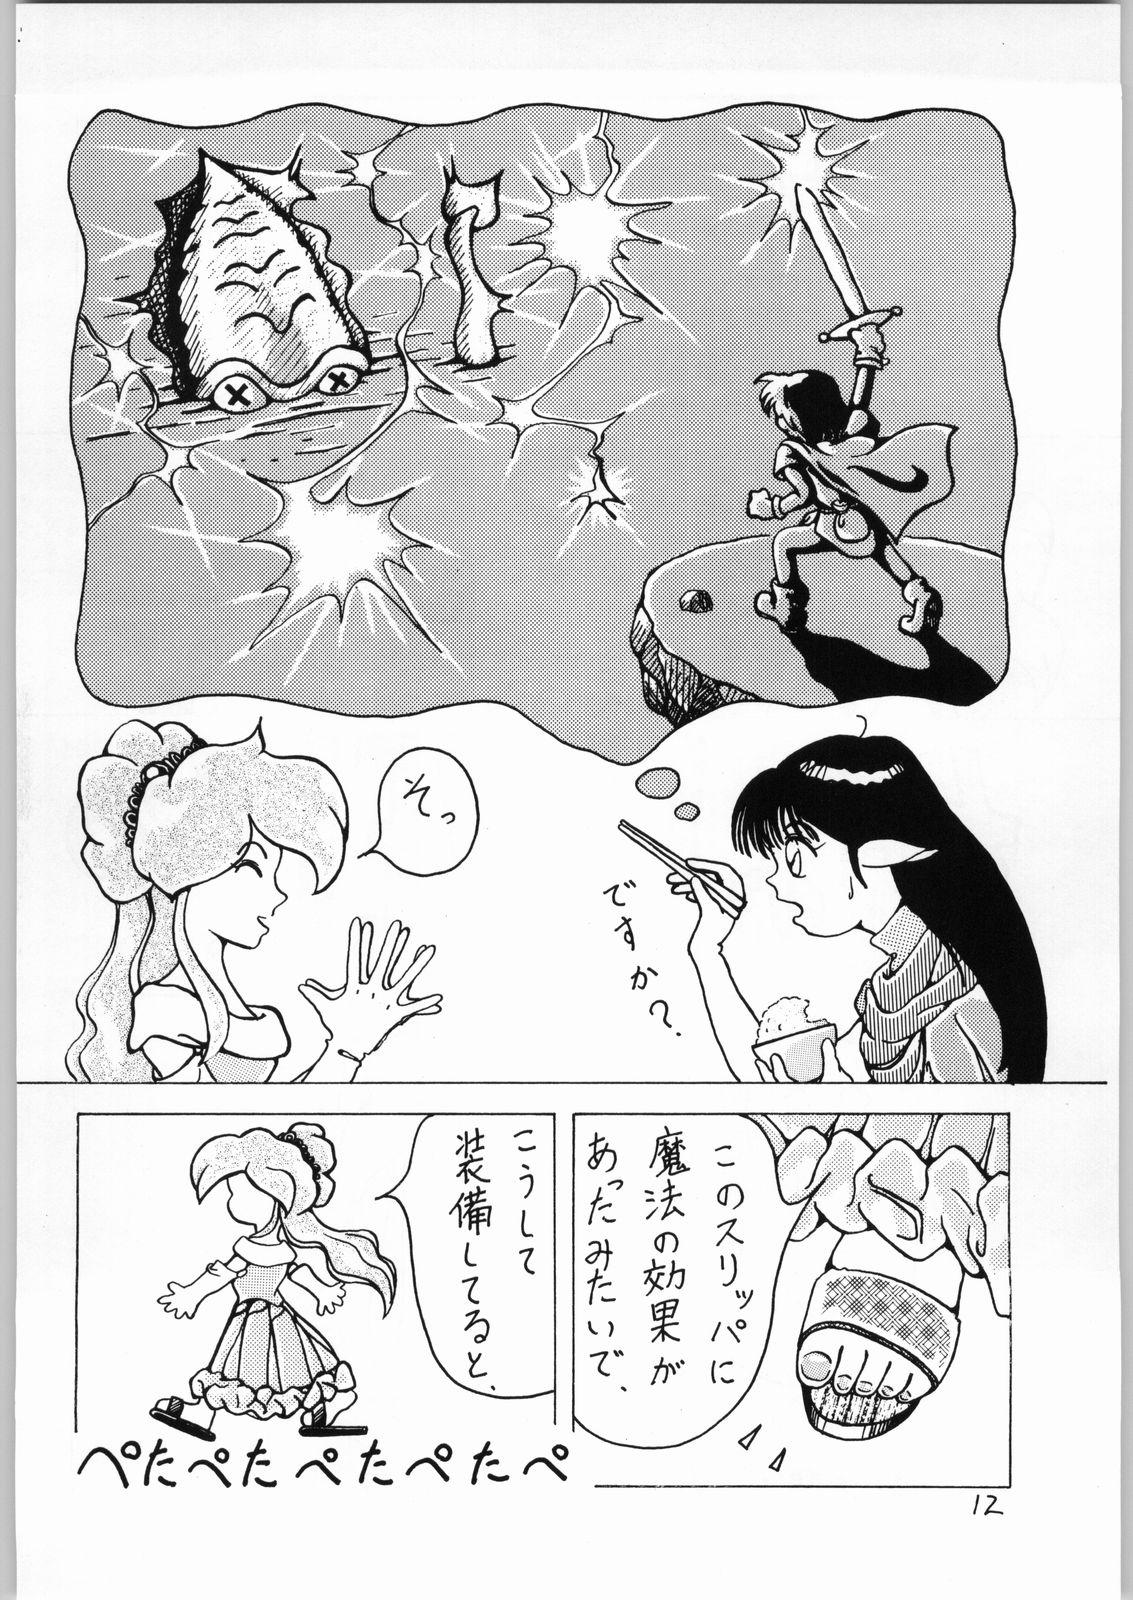 Eating Dance of Princess 3 - Sailor moon Tenchi muyo Akazukin cha cha Minky momo Ng knight lamune and 40 Tites - Page 11